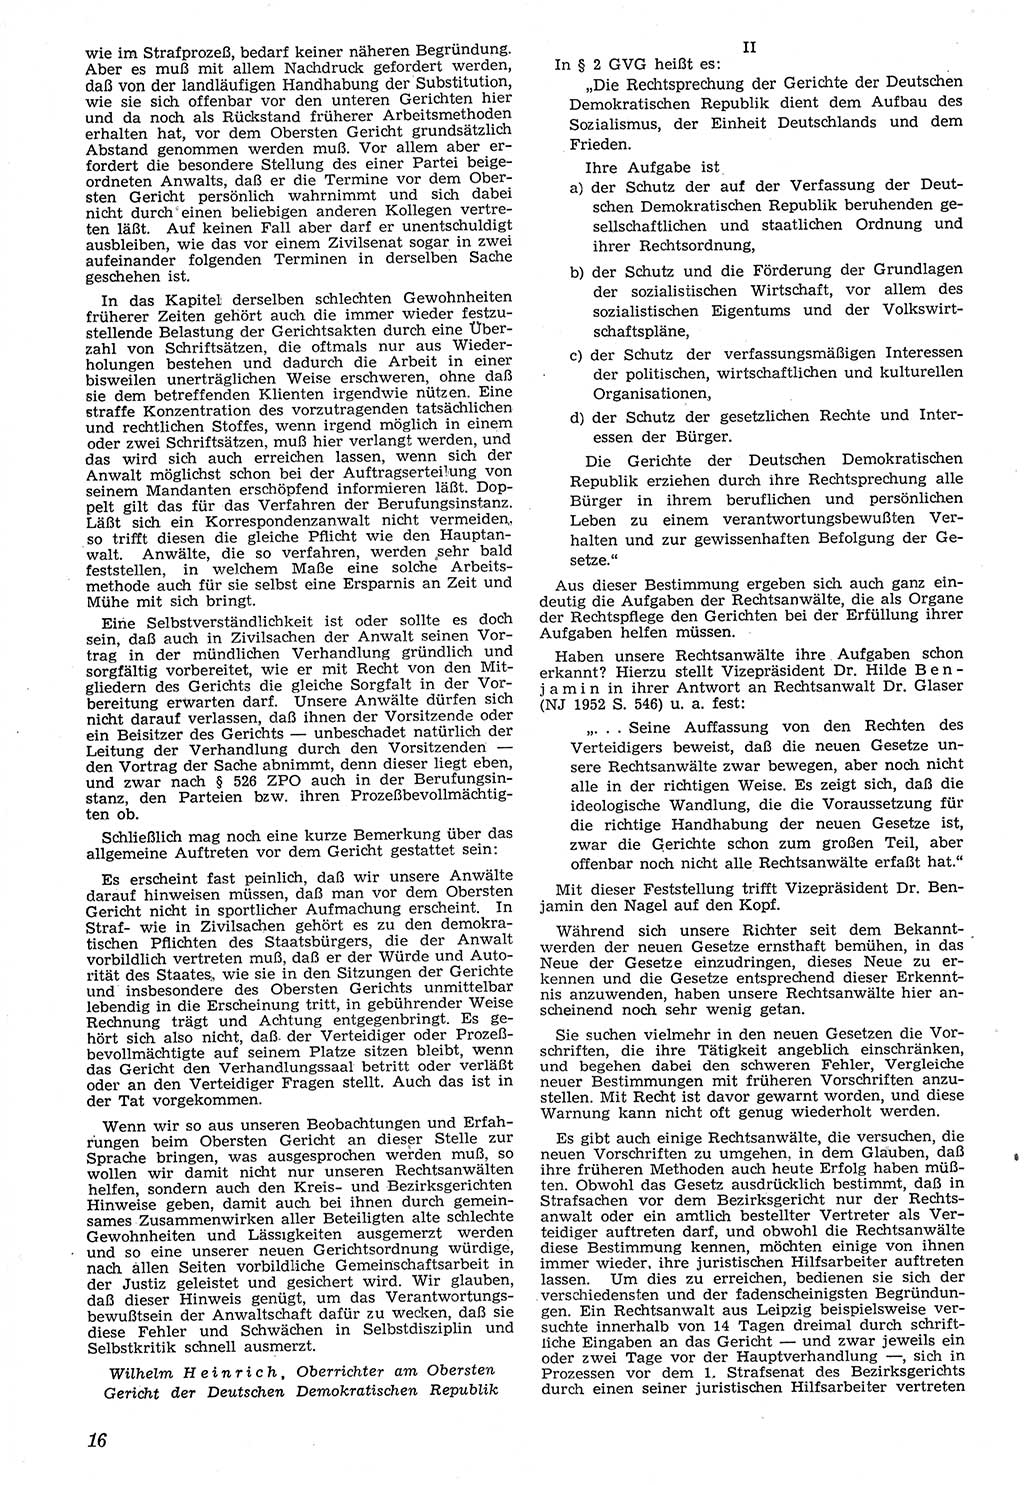 Neue Justiz (NJ), Zeitschrift für Recht und Rechtswissenschaft [Deutsche Demokratische Republik (DDR)], 7. Jahrgang 1953, Seite 16 (NJ DDR 1953, S. 16)